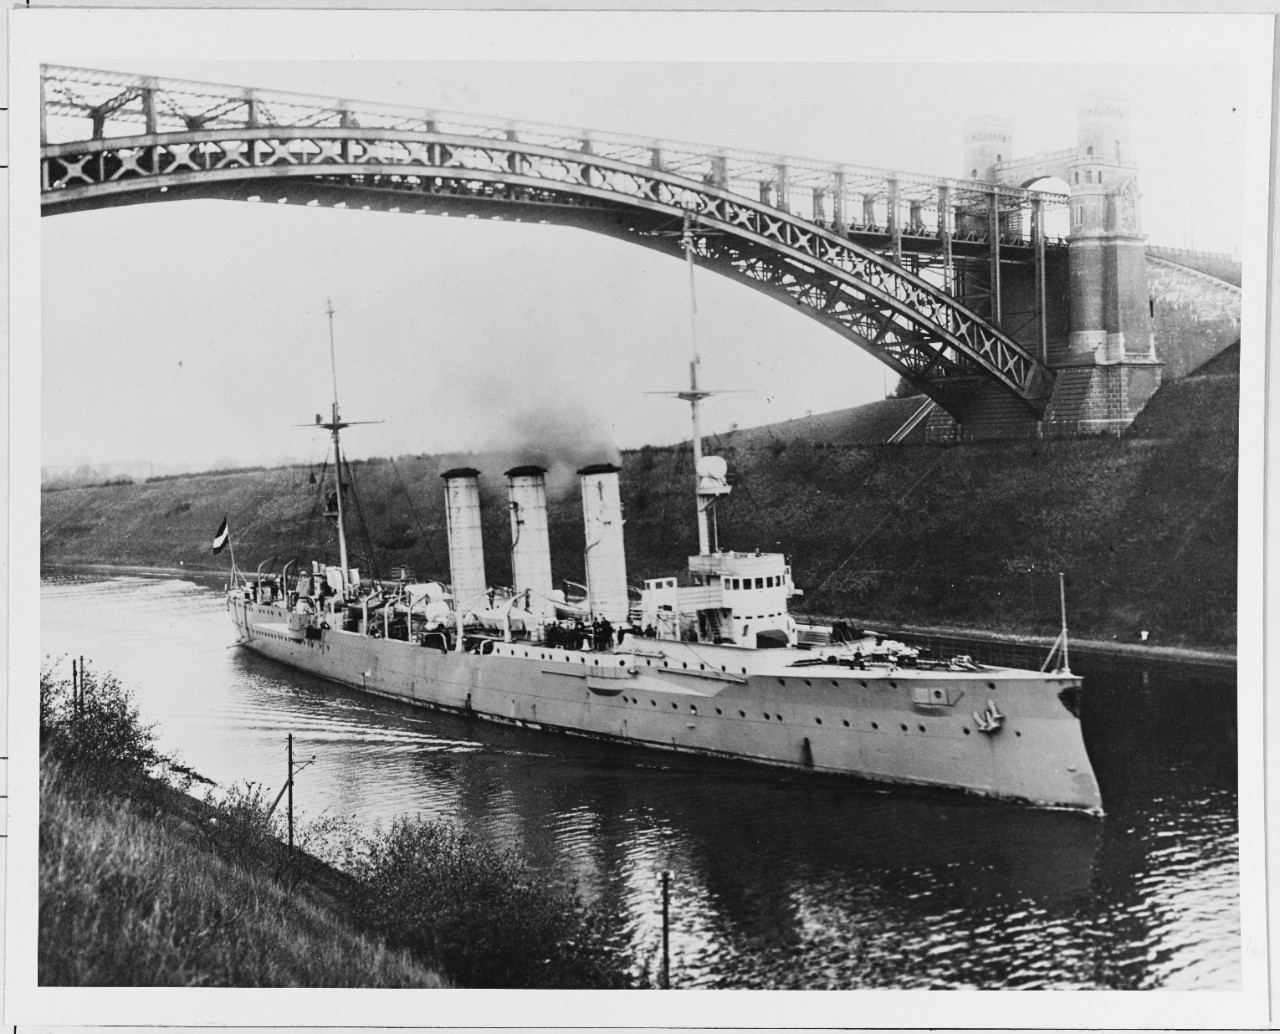 SMS DRESDEN (German light cruiser, 1907)